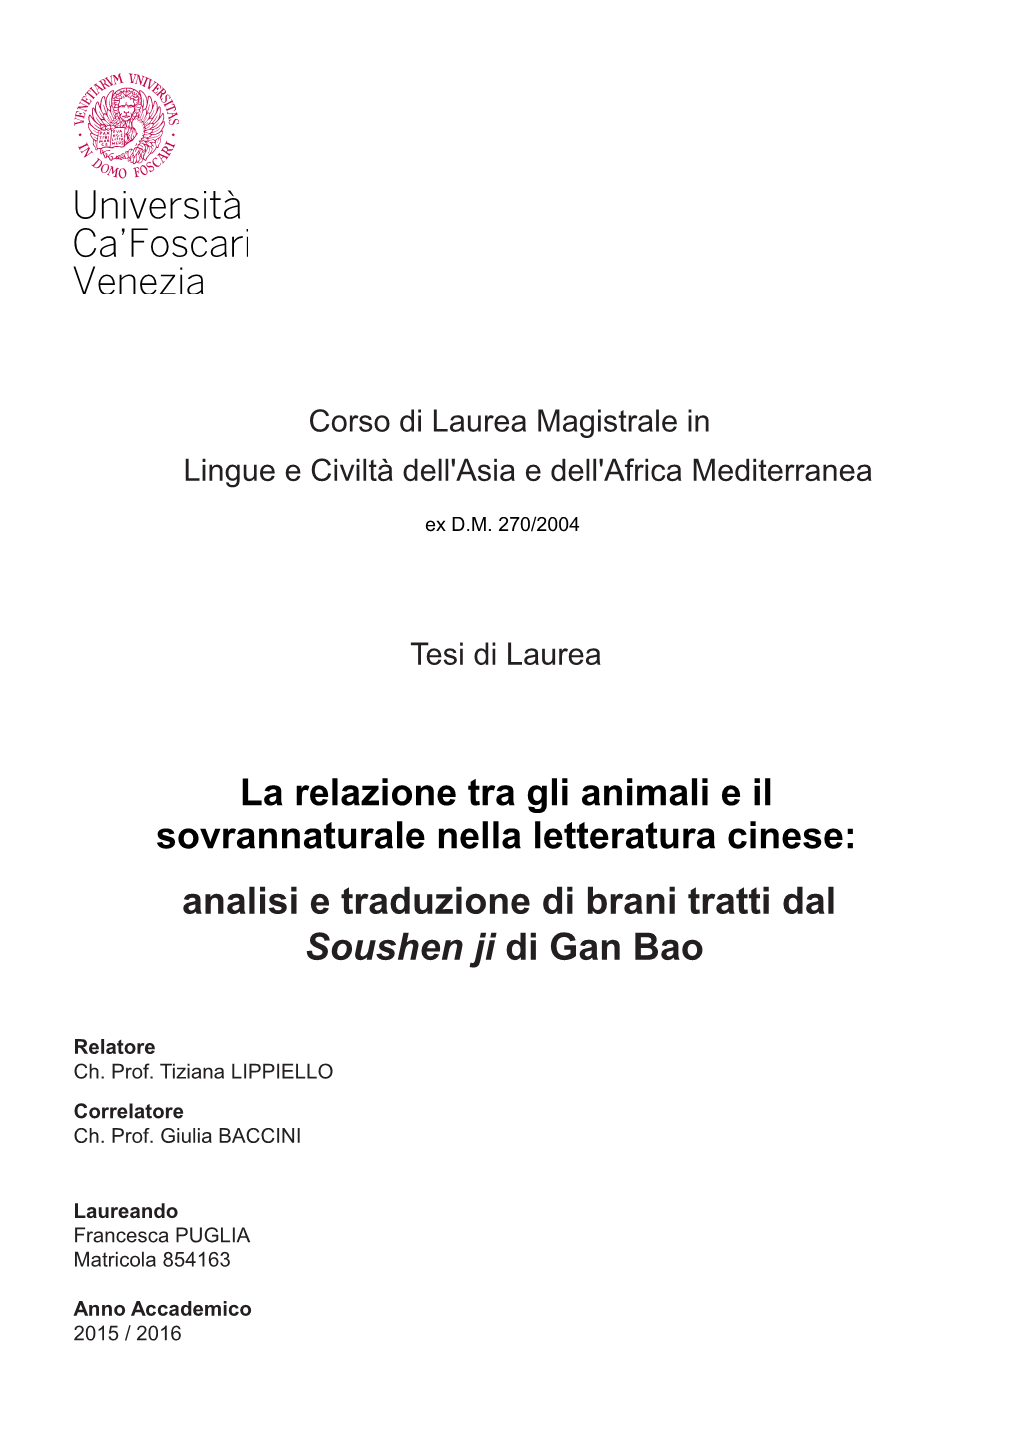 La Relazione Tra Gli Animali E Il Sovrannaturale Nella Letteratura Cinese: Analisi E Traduzione Di Brani Tratti Dal Soushen Ji Di Gan Bao